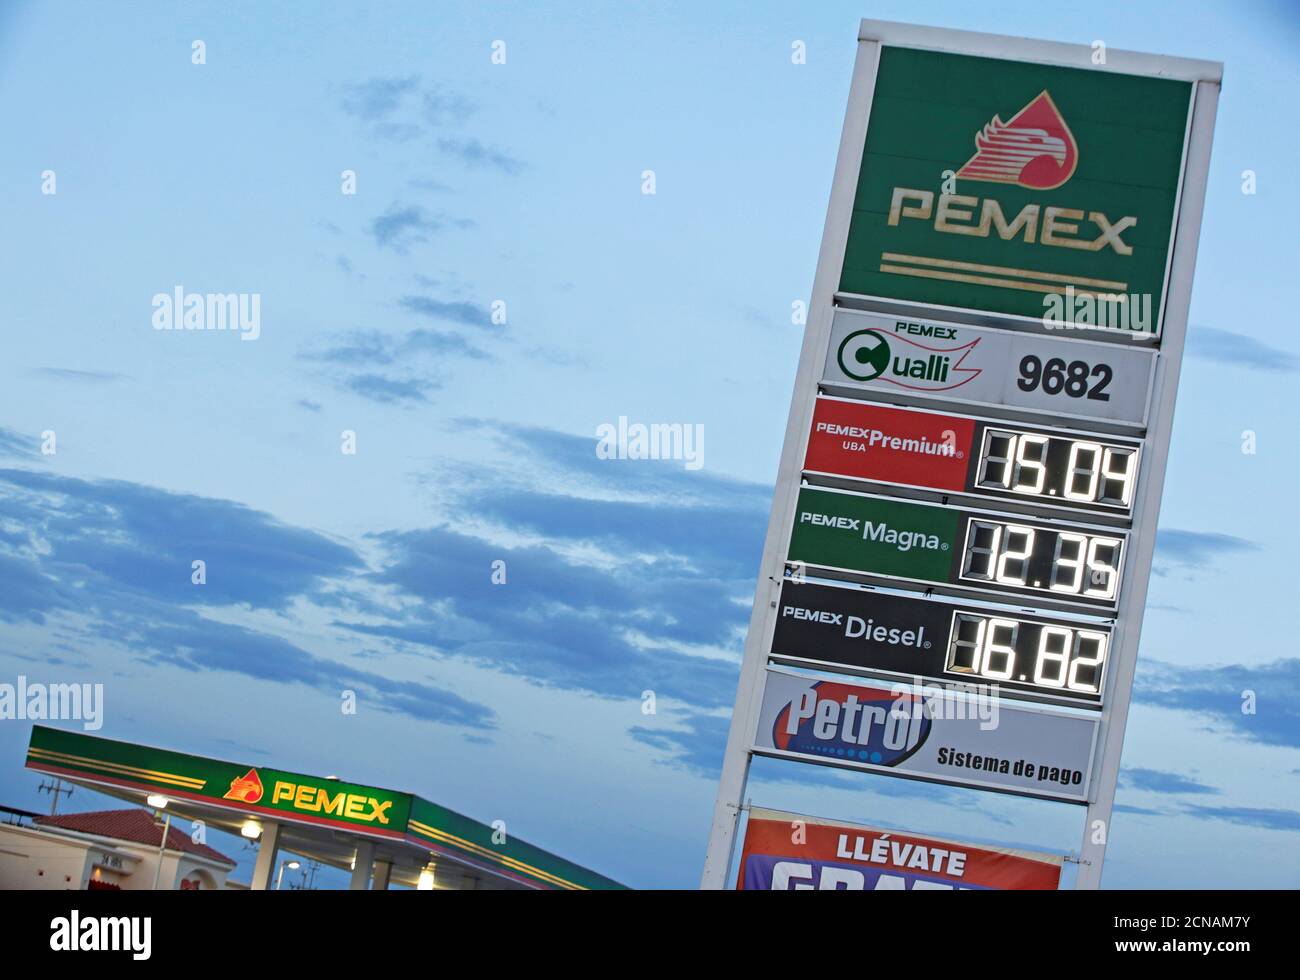 Un segno digitale dei prezzi a LED della società statale Petroleos Mexicanos (PEMEX) mostra i loro prezzi di Premium UBA (ultra basso di zolfo), Magna (regolare) benzina e diesel, a Ciudad Juarez, Messico 4 ottobre 2017. Foto scattata il 4 ottobre 2017. REUTERS/Jose Luis Gonzalez Foto Stock